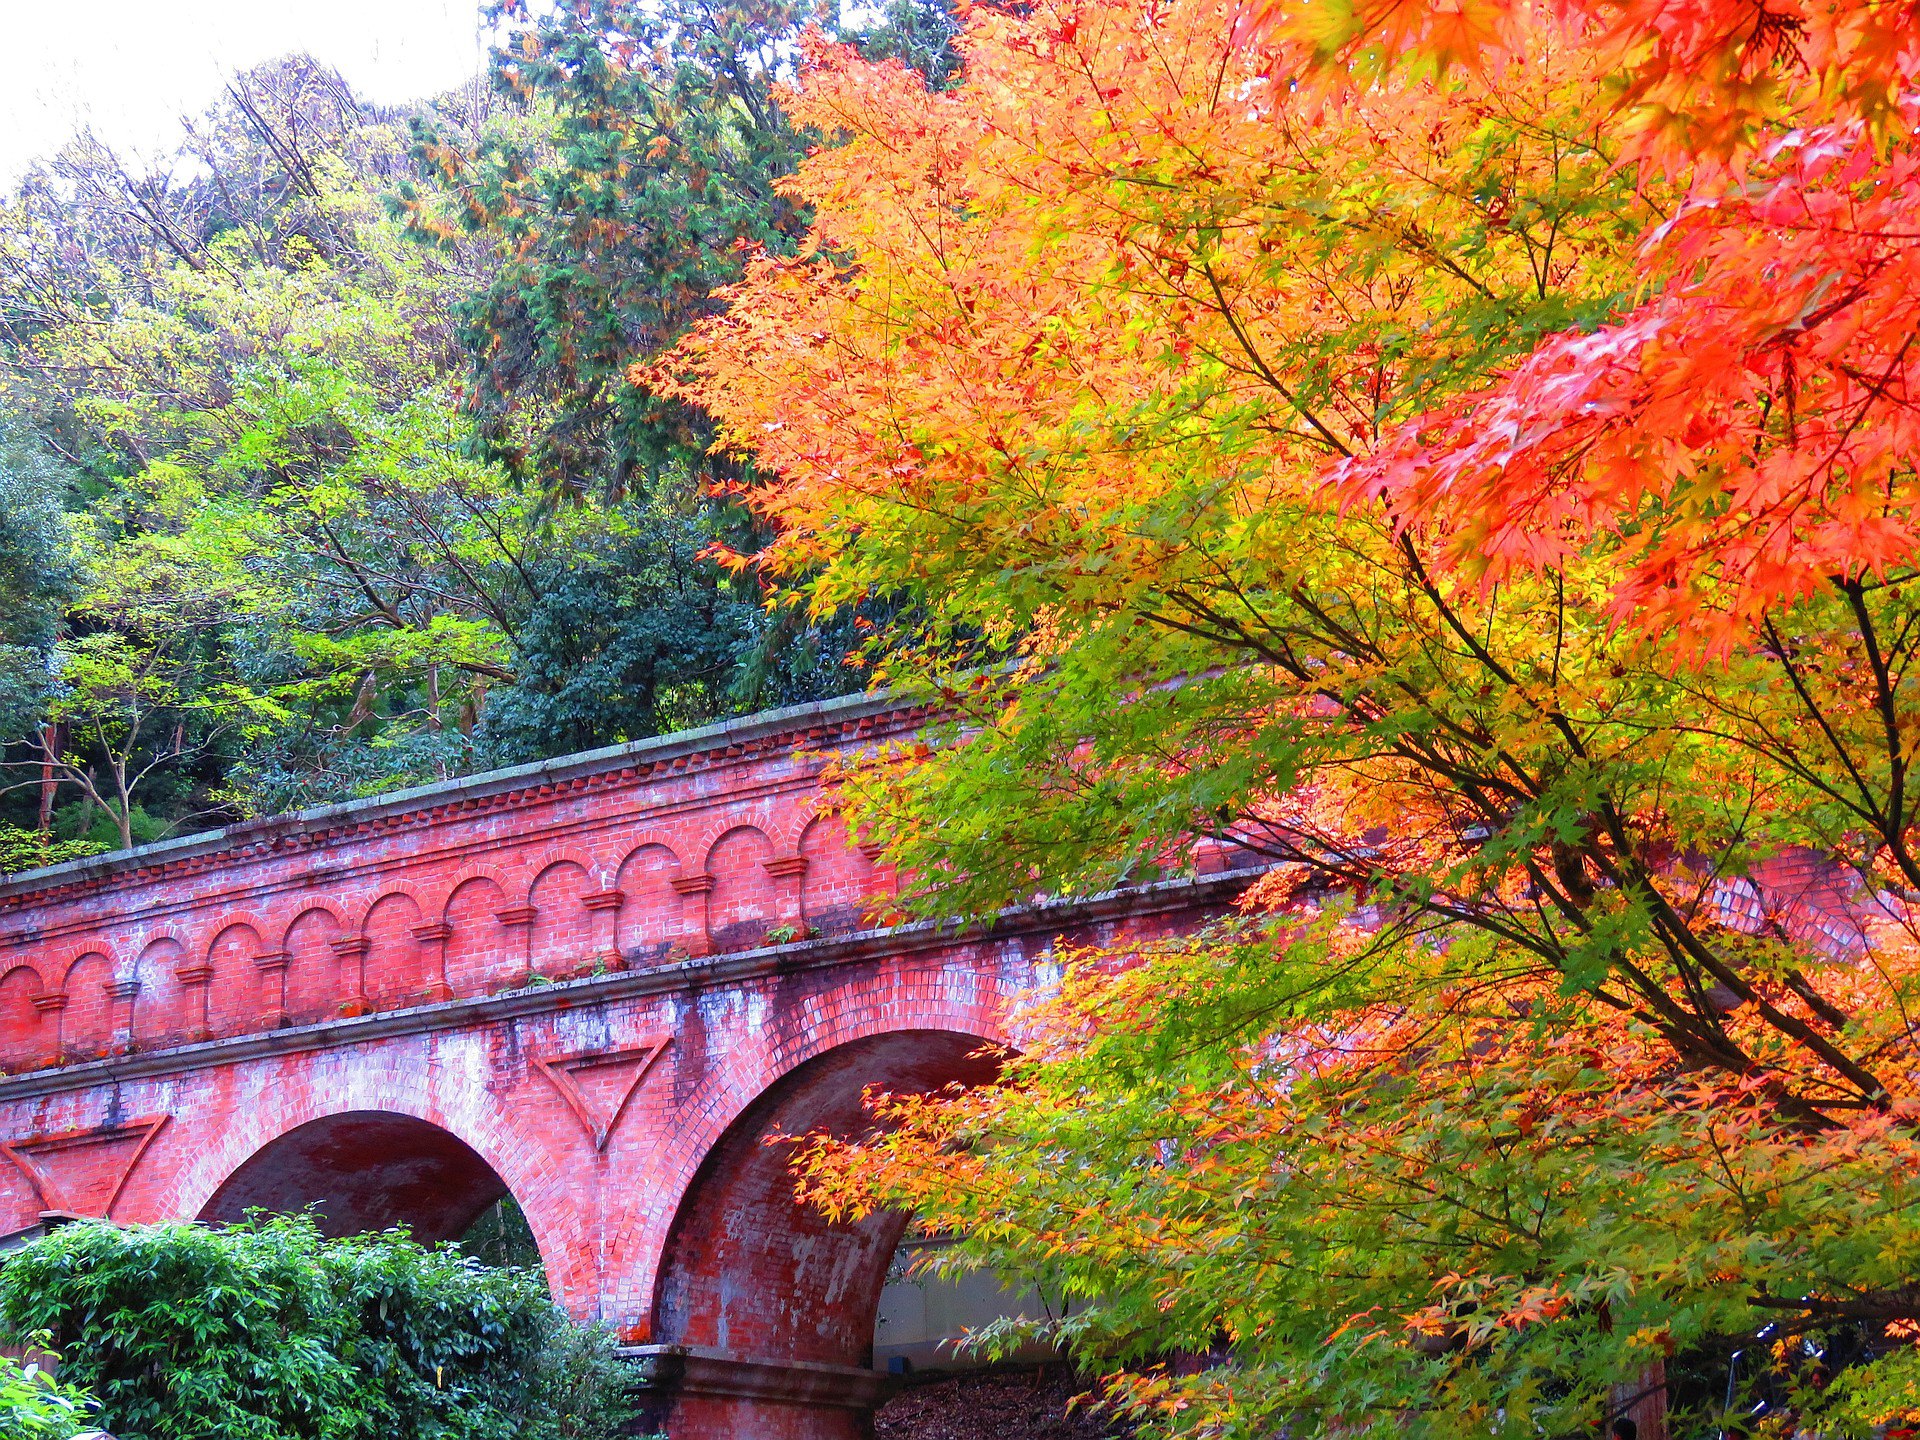 日本の風景 秋の南禅寺水路閣 壁紙19x1440 壁紙館